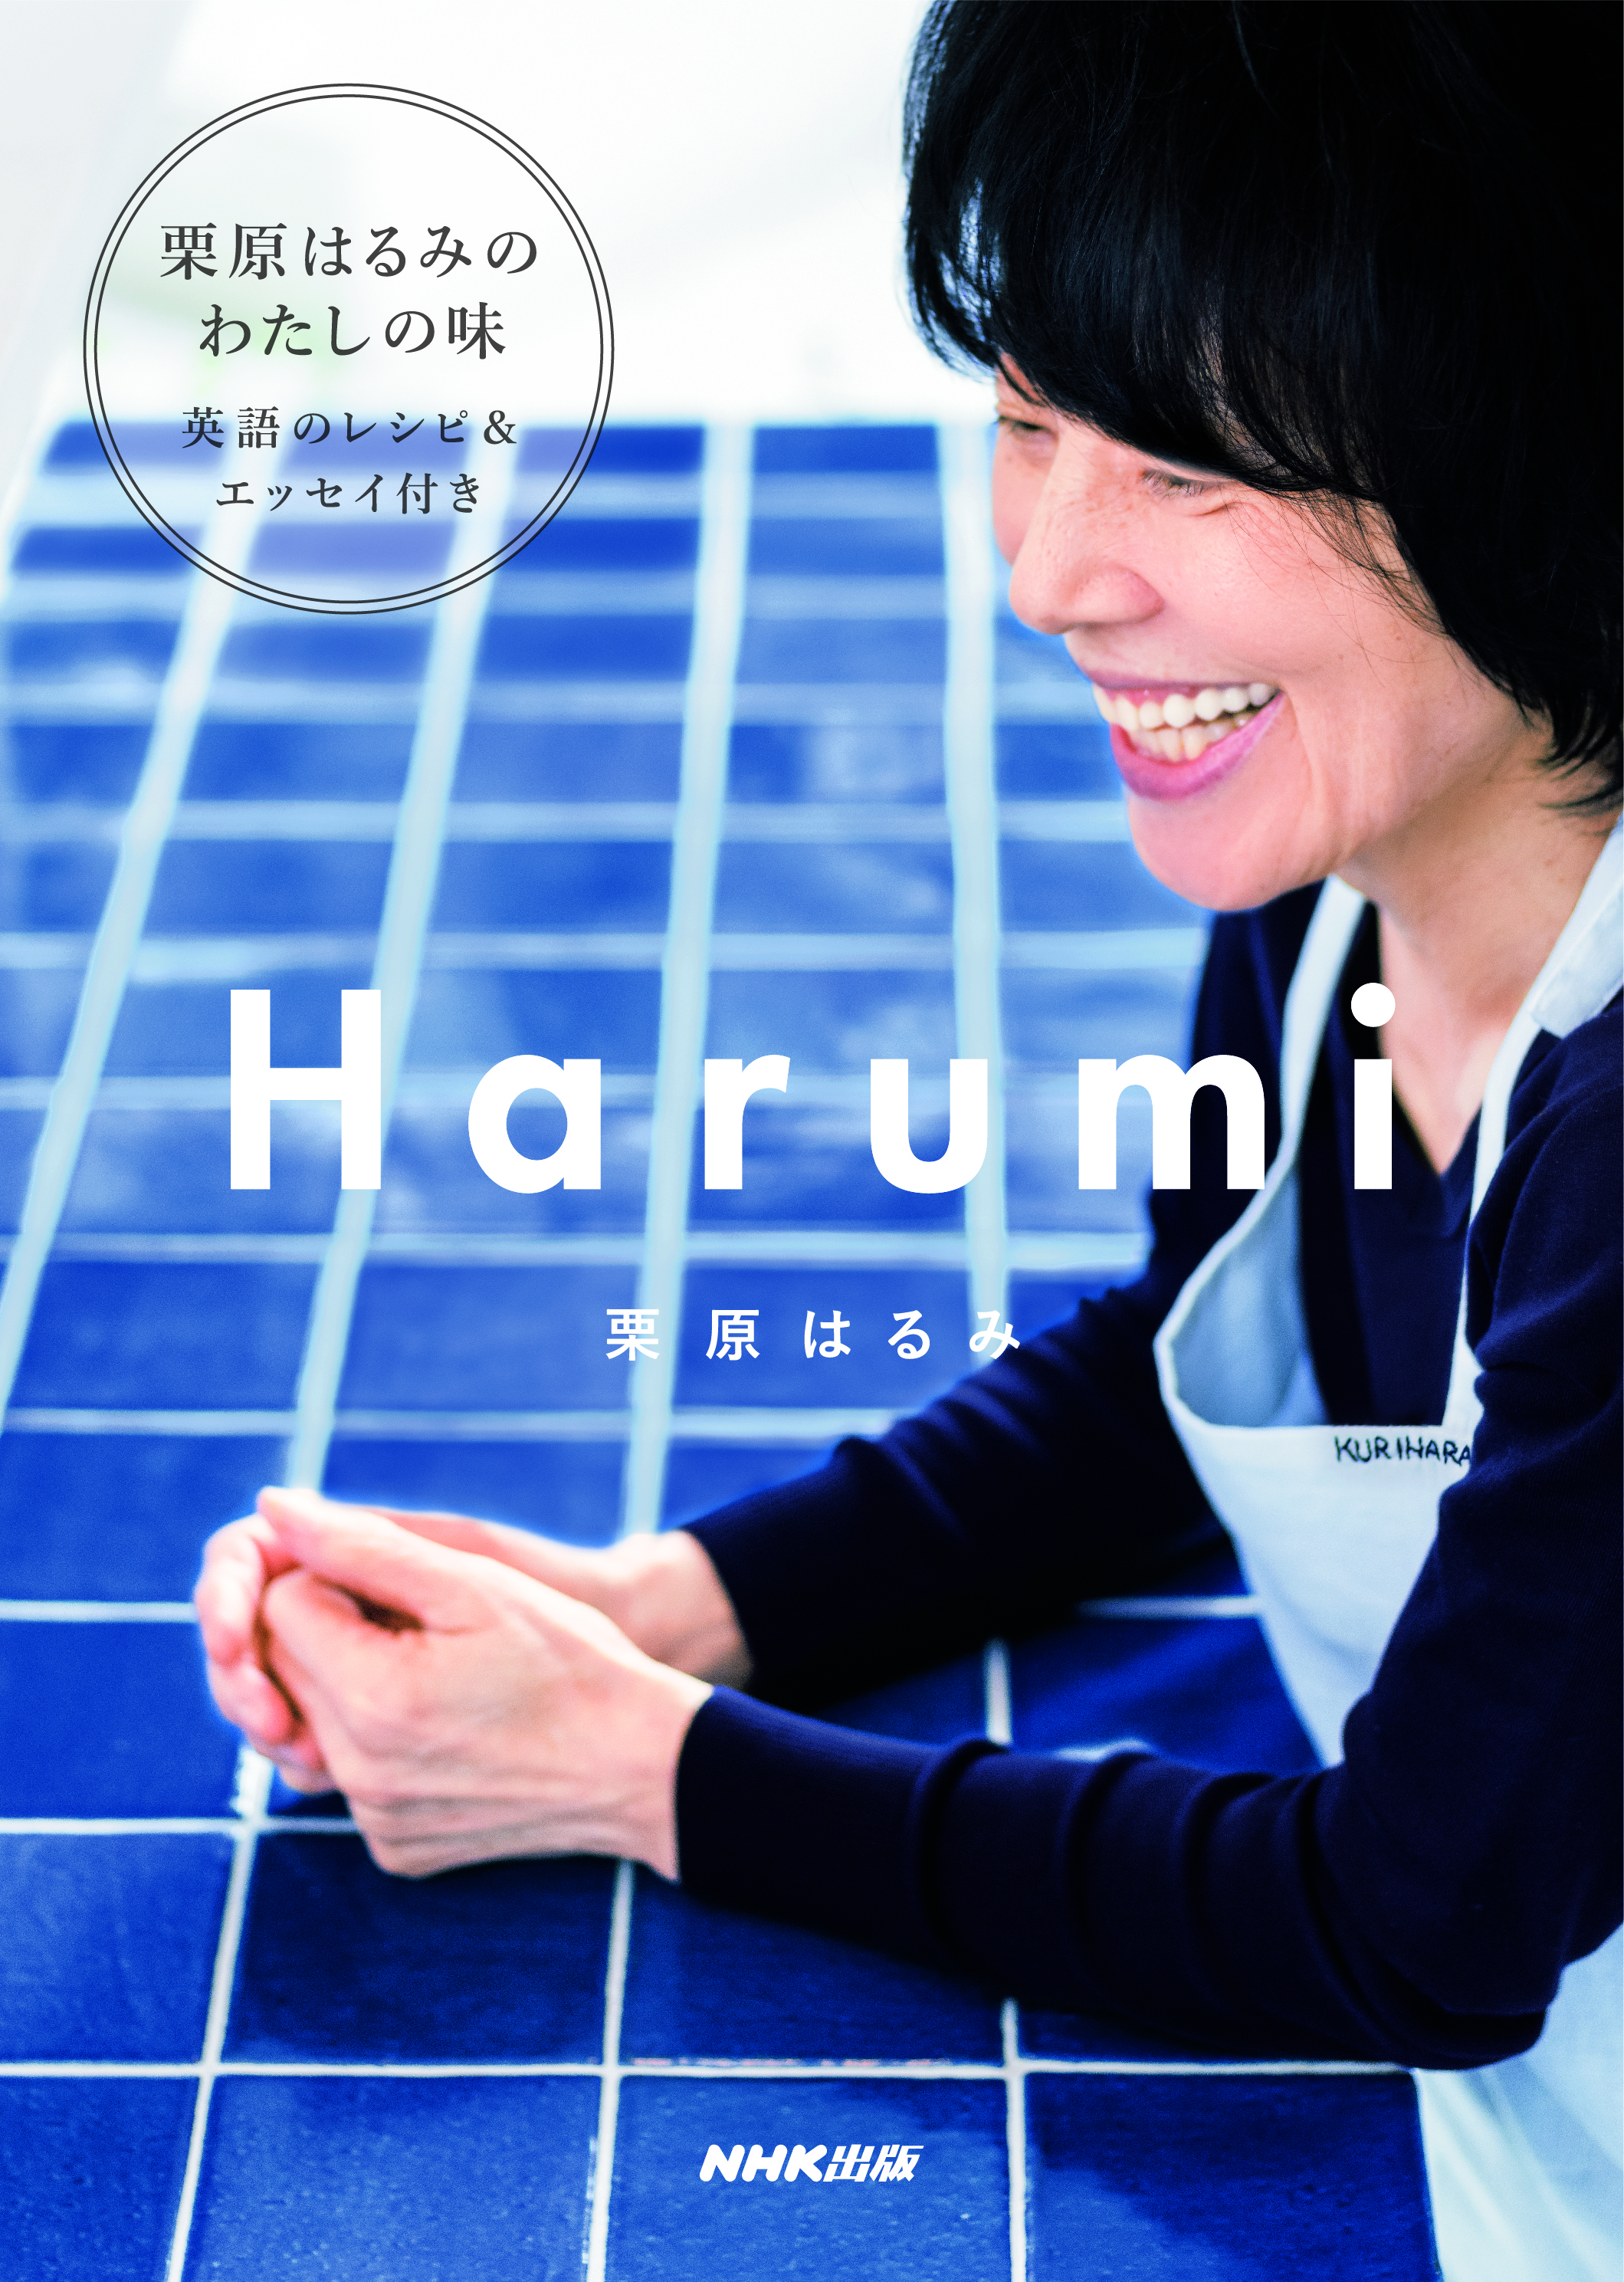 『Harumi』